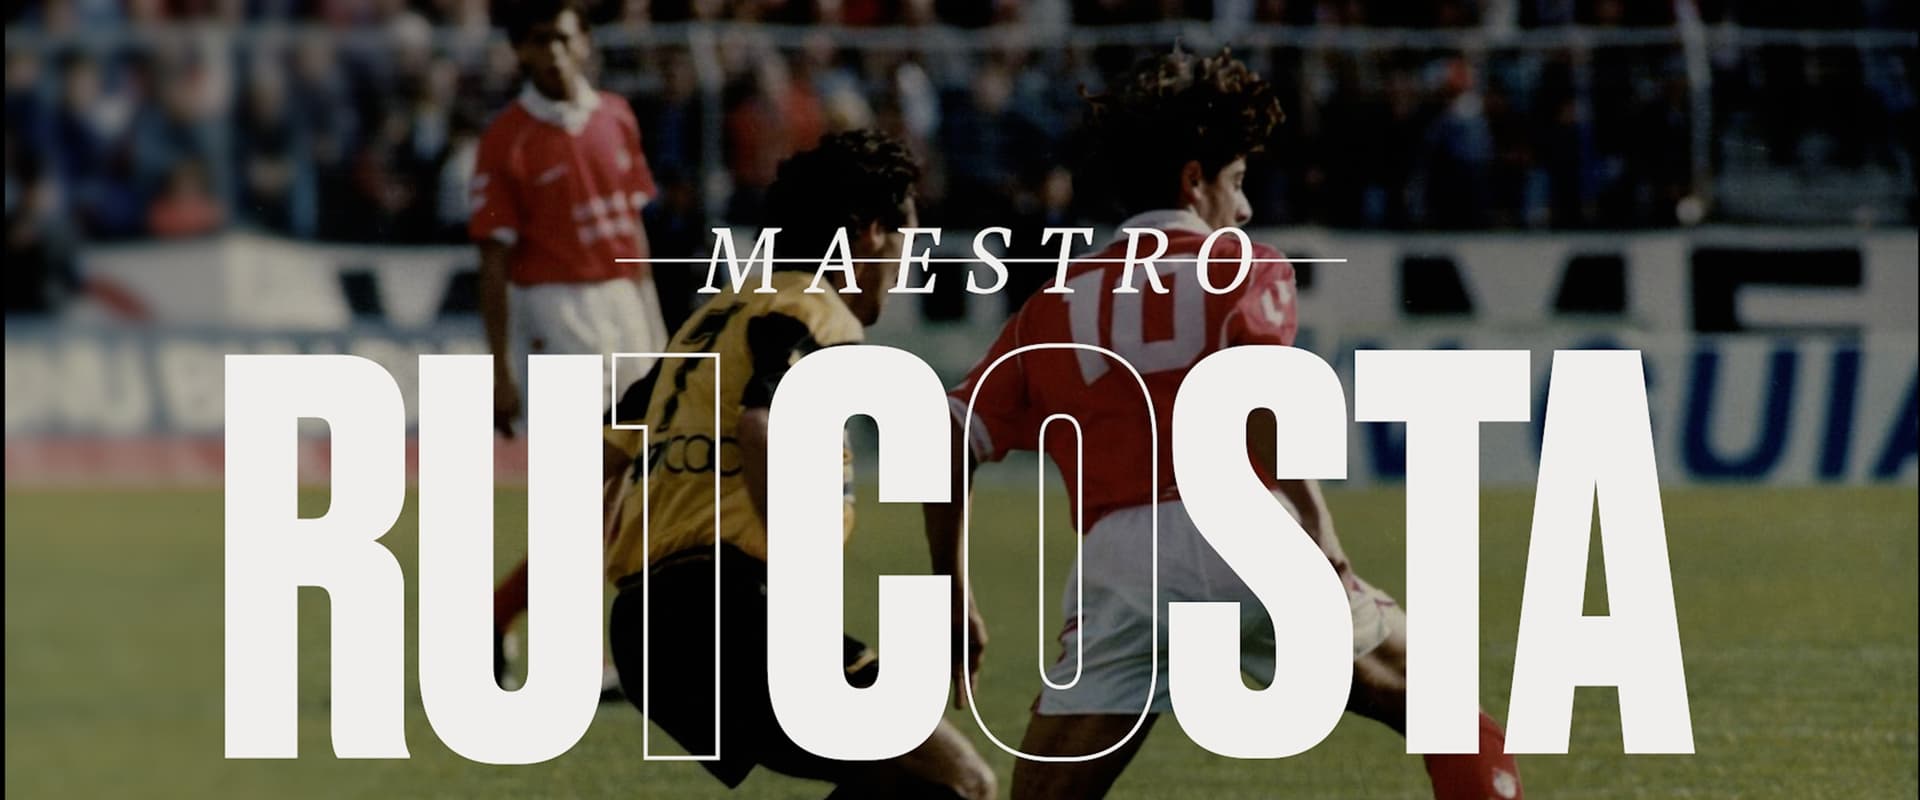 Maestro Rui Costa - Benfica's Prodigal Son